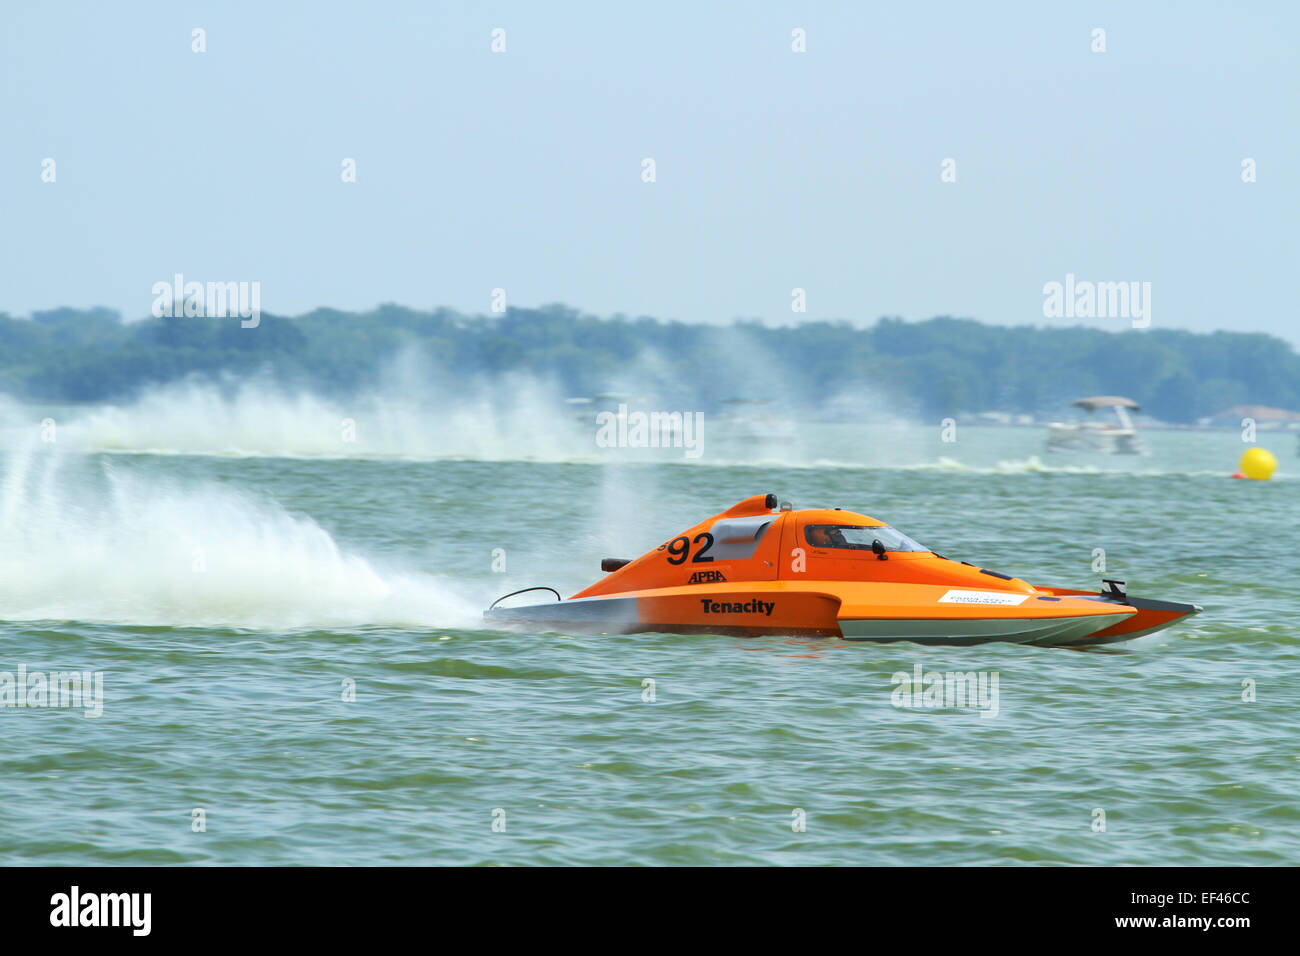 Imbarcazione S92. Classe GNH, Grand National idrovolante. Barca Racing. American Power Boat Association (APBA) sancita evento. La Ohio Foto Stock